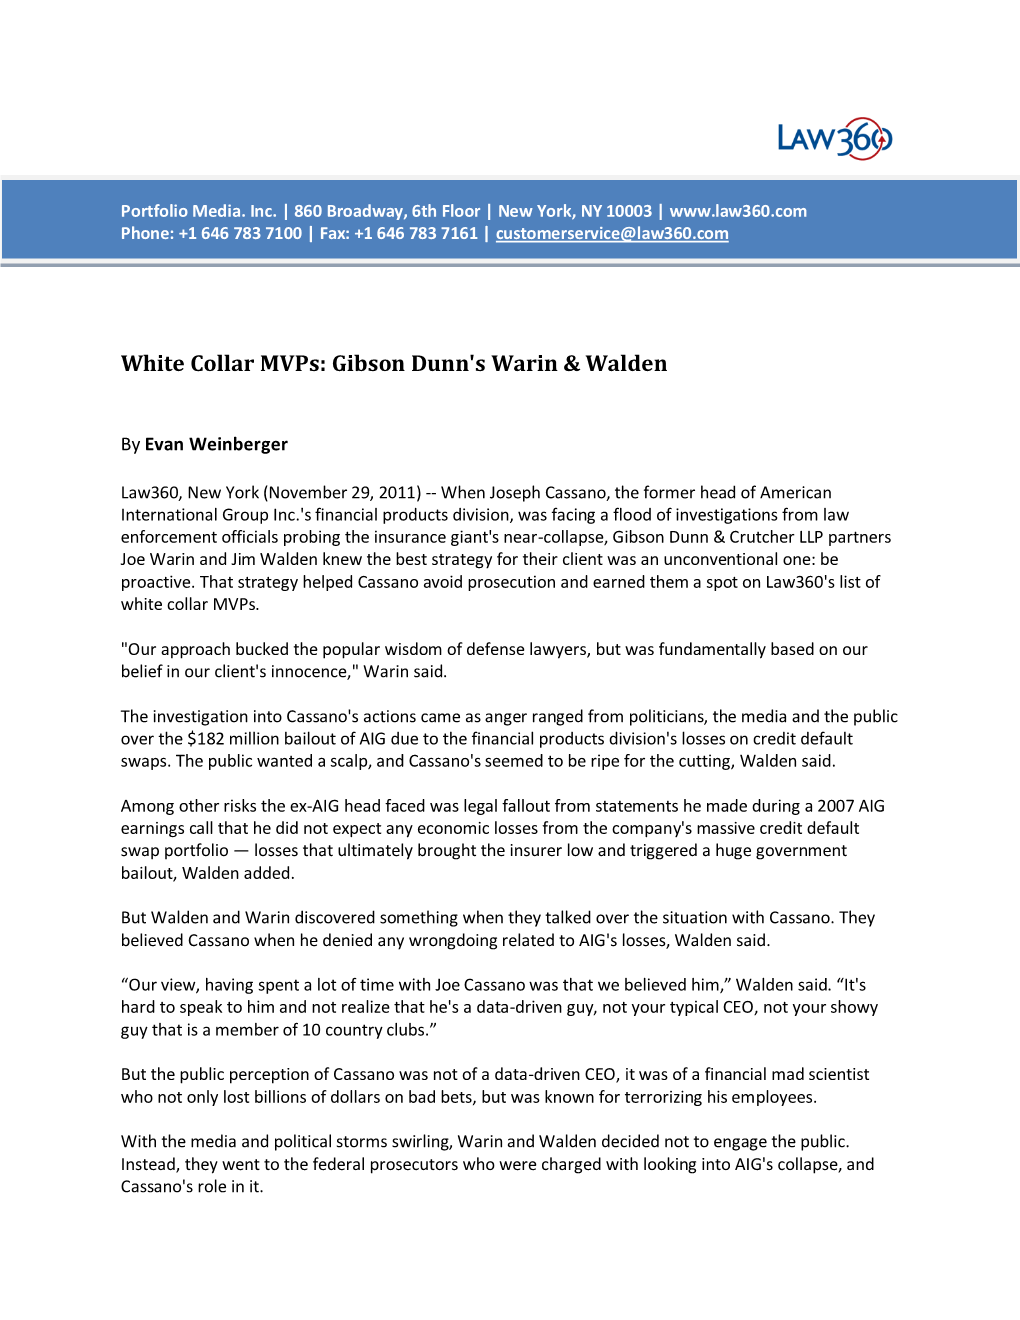 White Collar Mvps: Gibson Dunn's Warin & Walden